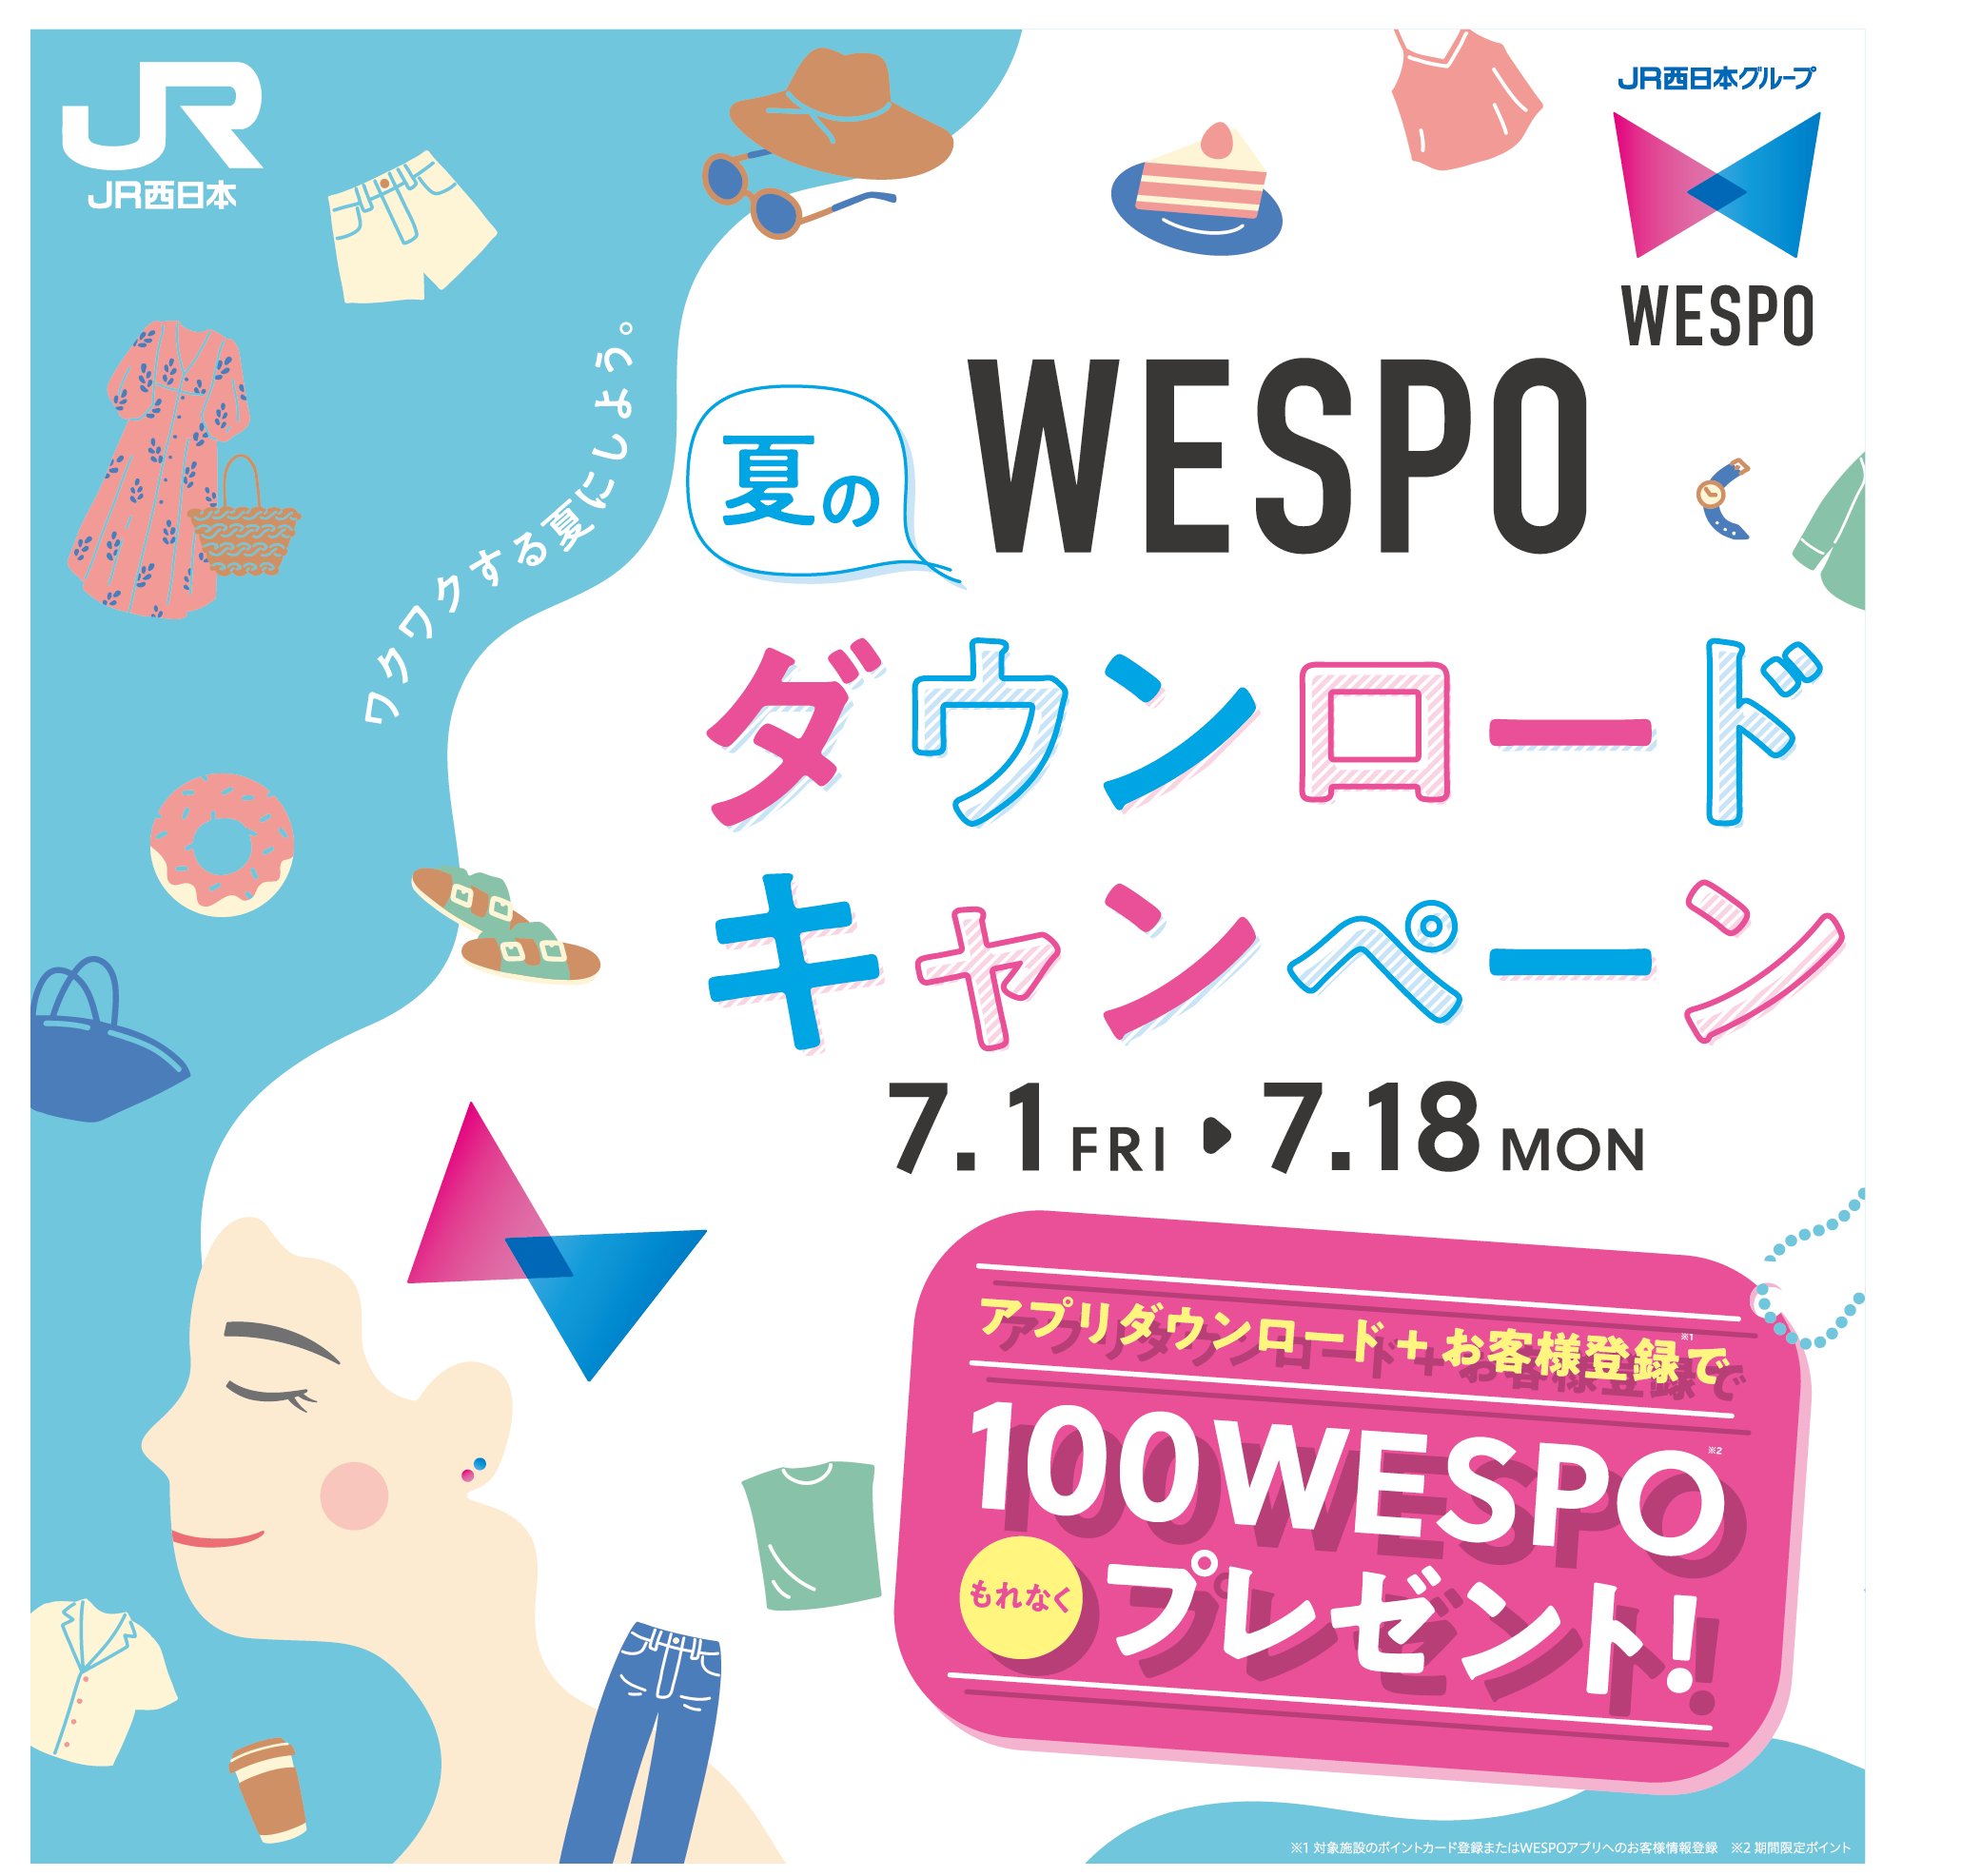 WESPO ダウンロードキャンペーン